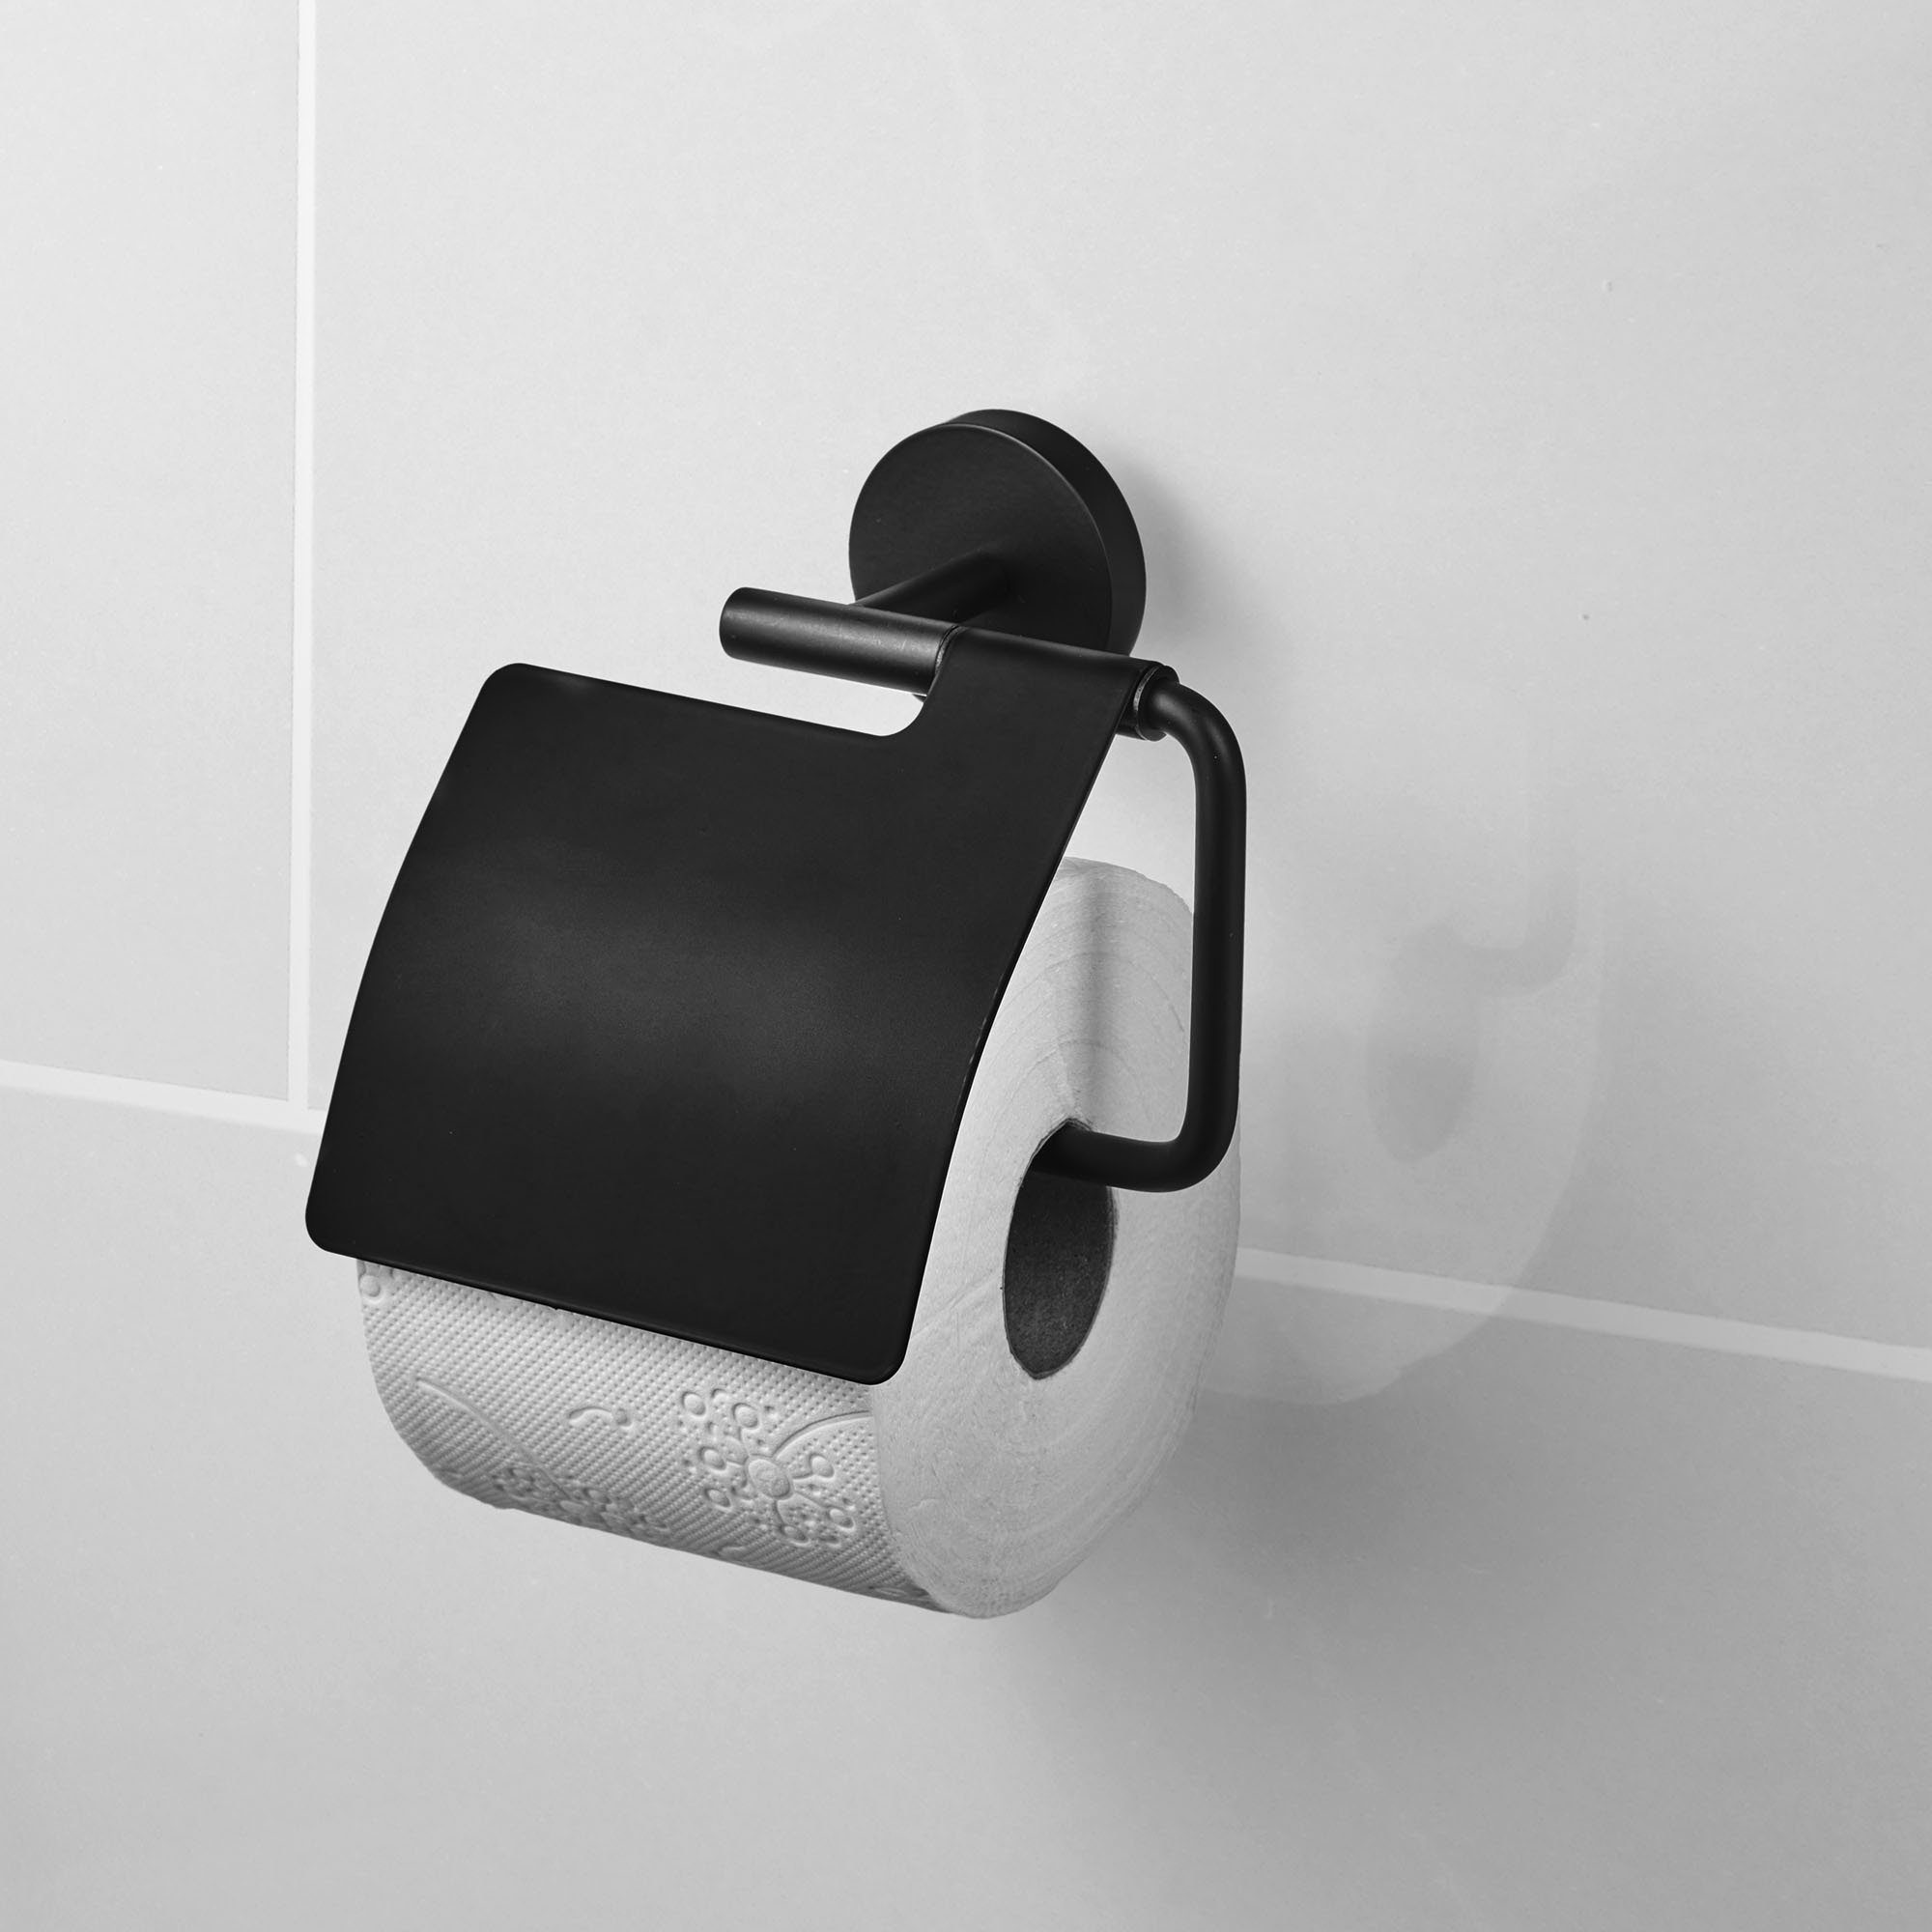 Amare Bath Toilettenpapierhalter Toilettenpapierhalter Schwarz